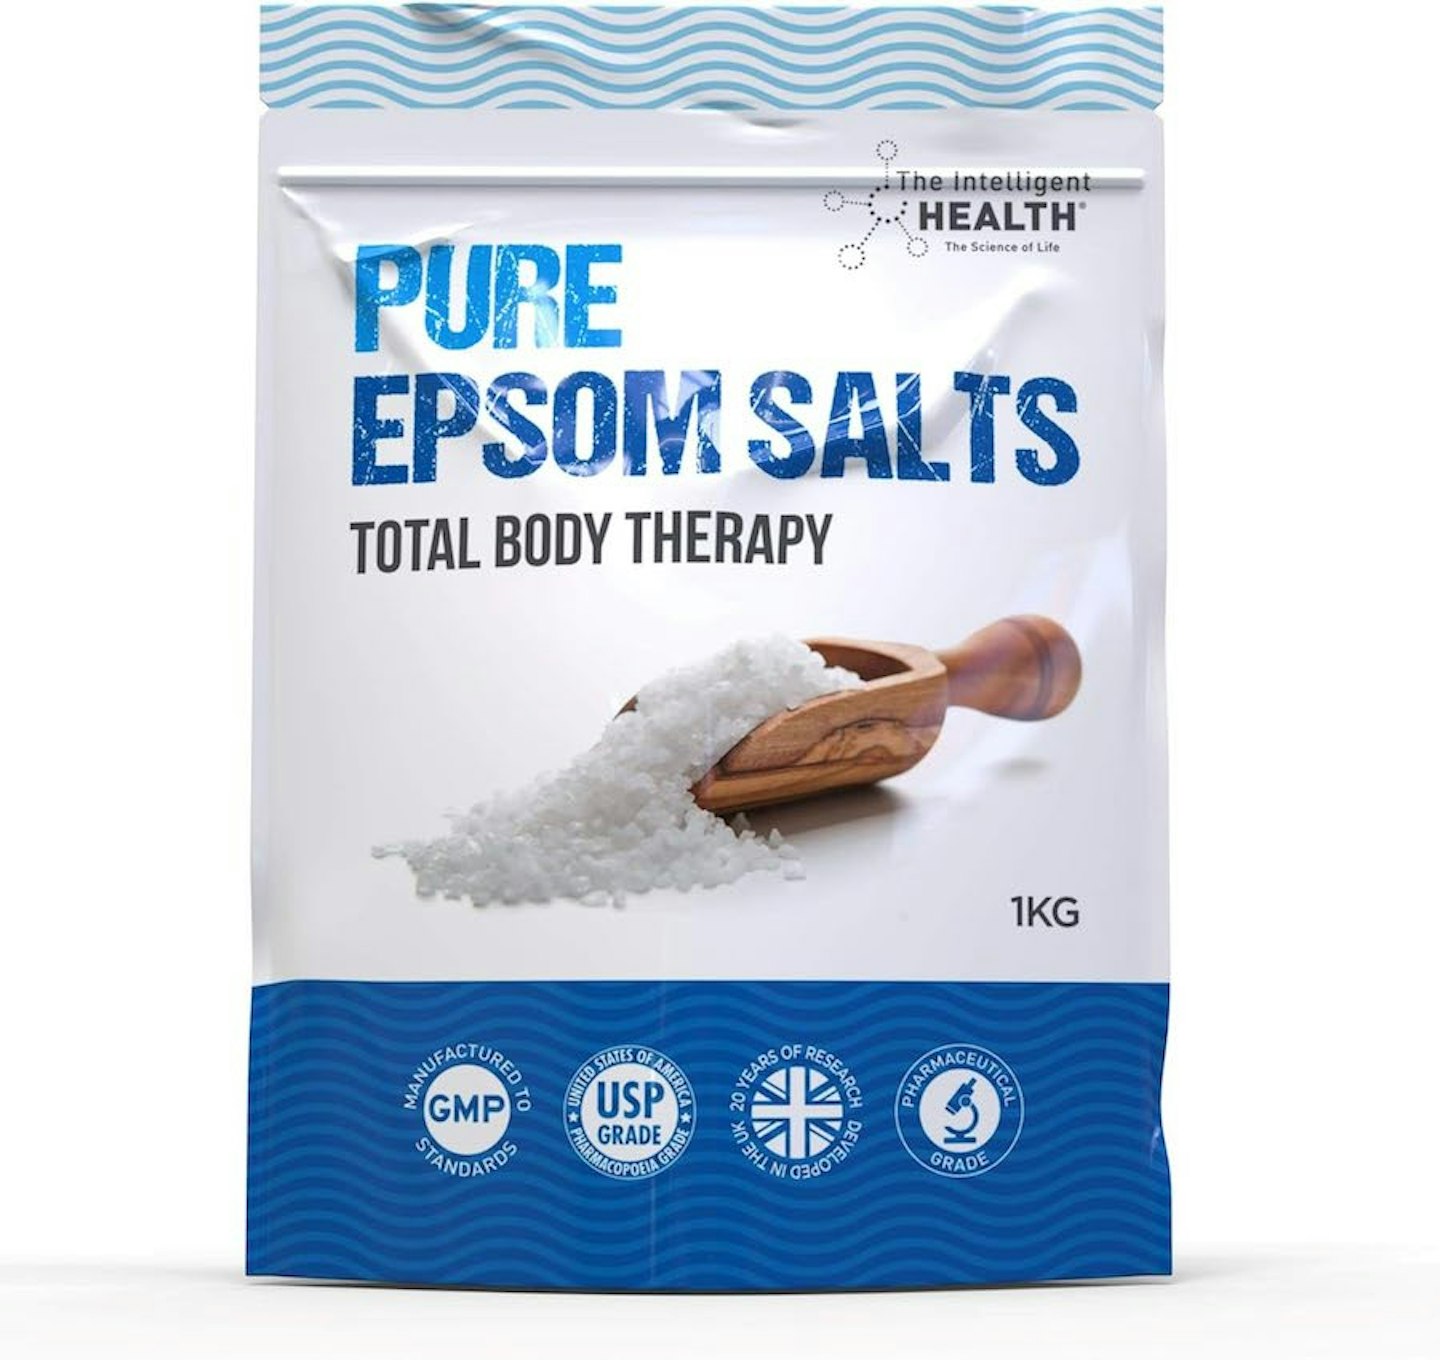 The Intelligent Health Pure Epsom Salts, Magnesium Sulphate Bath Salt 1KG